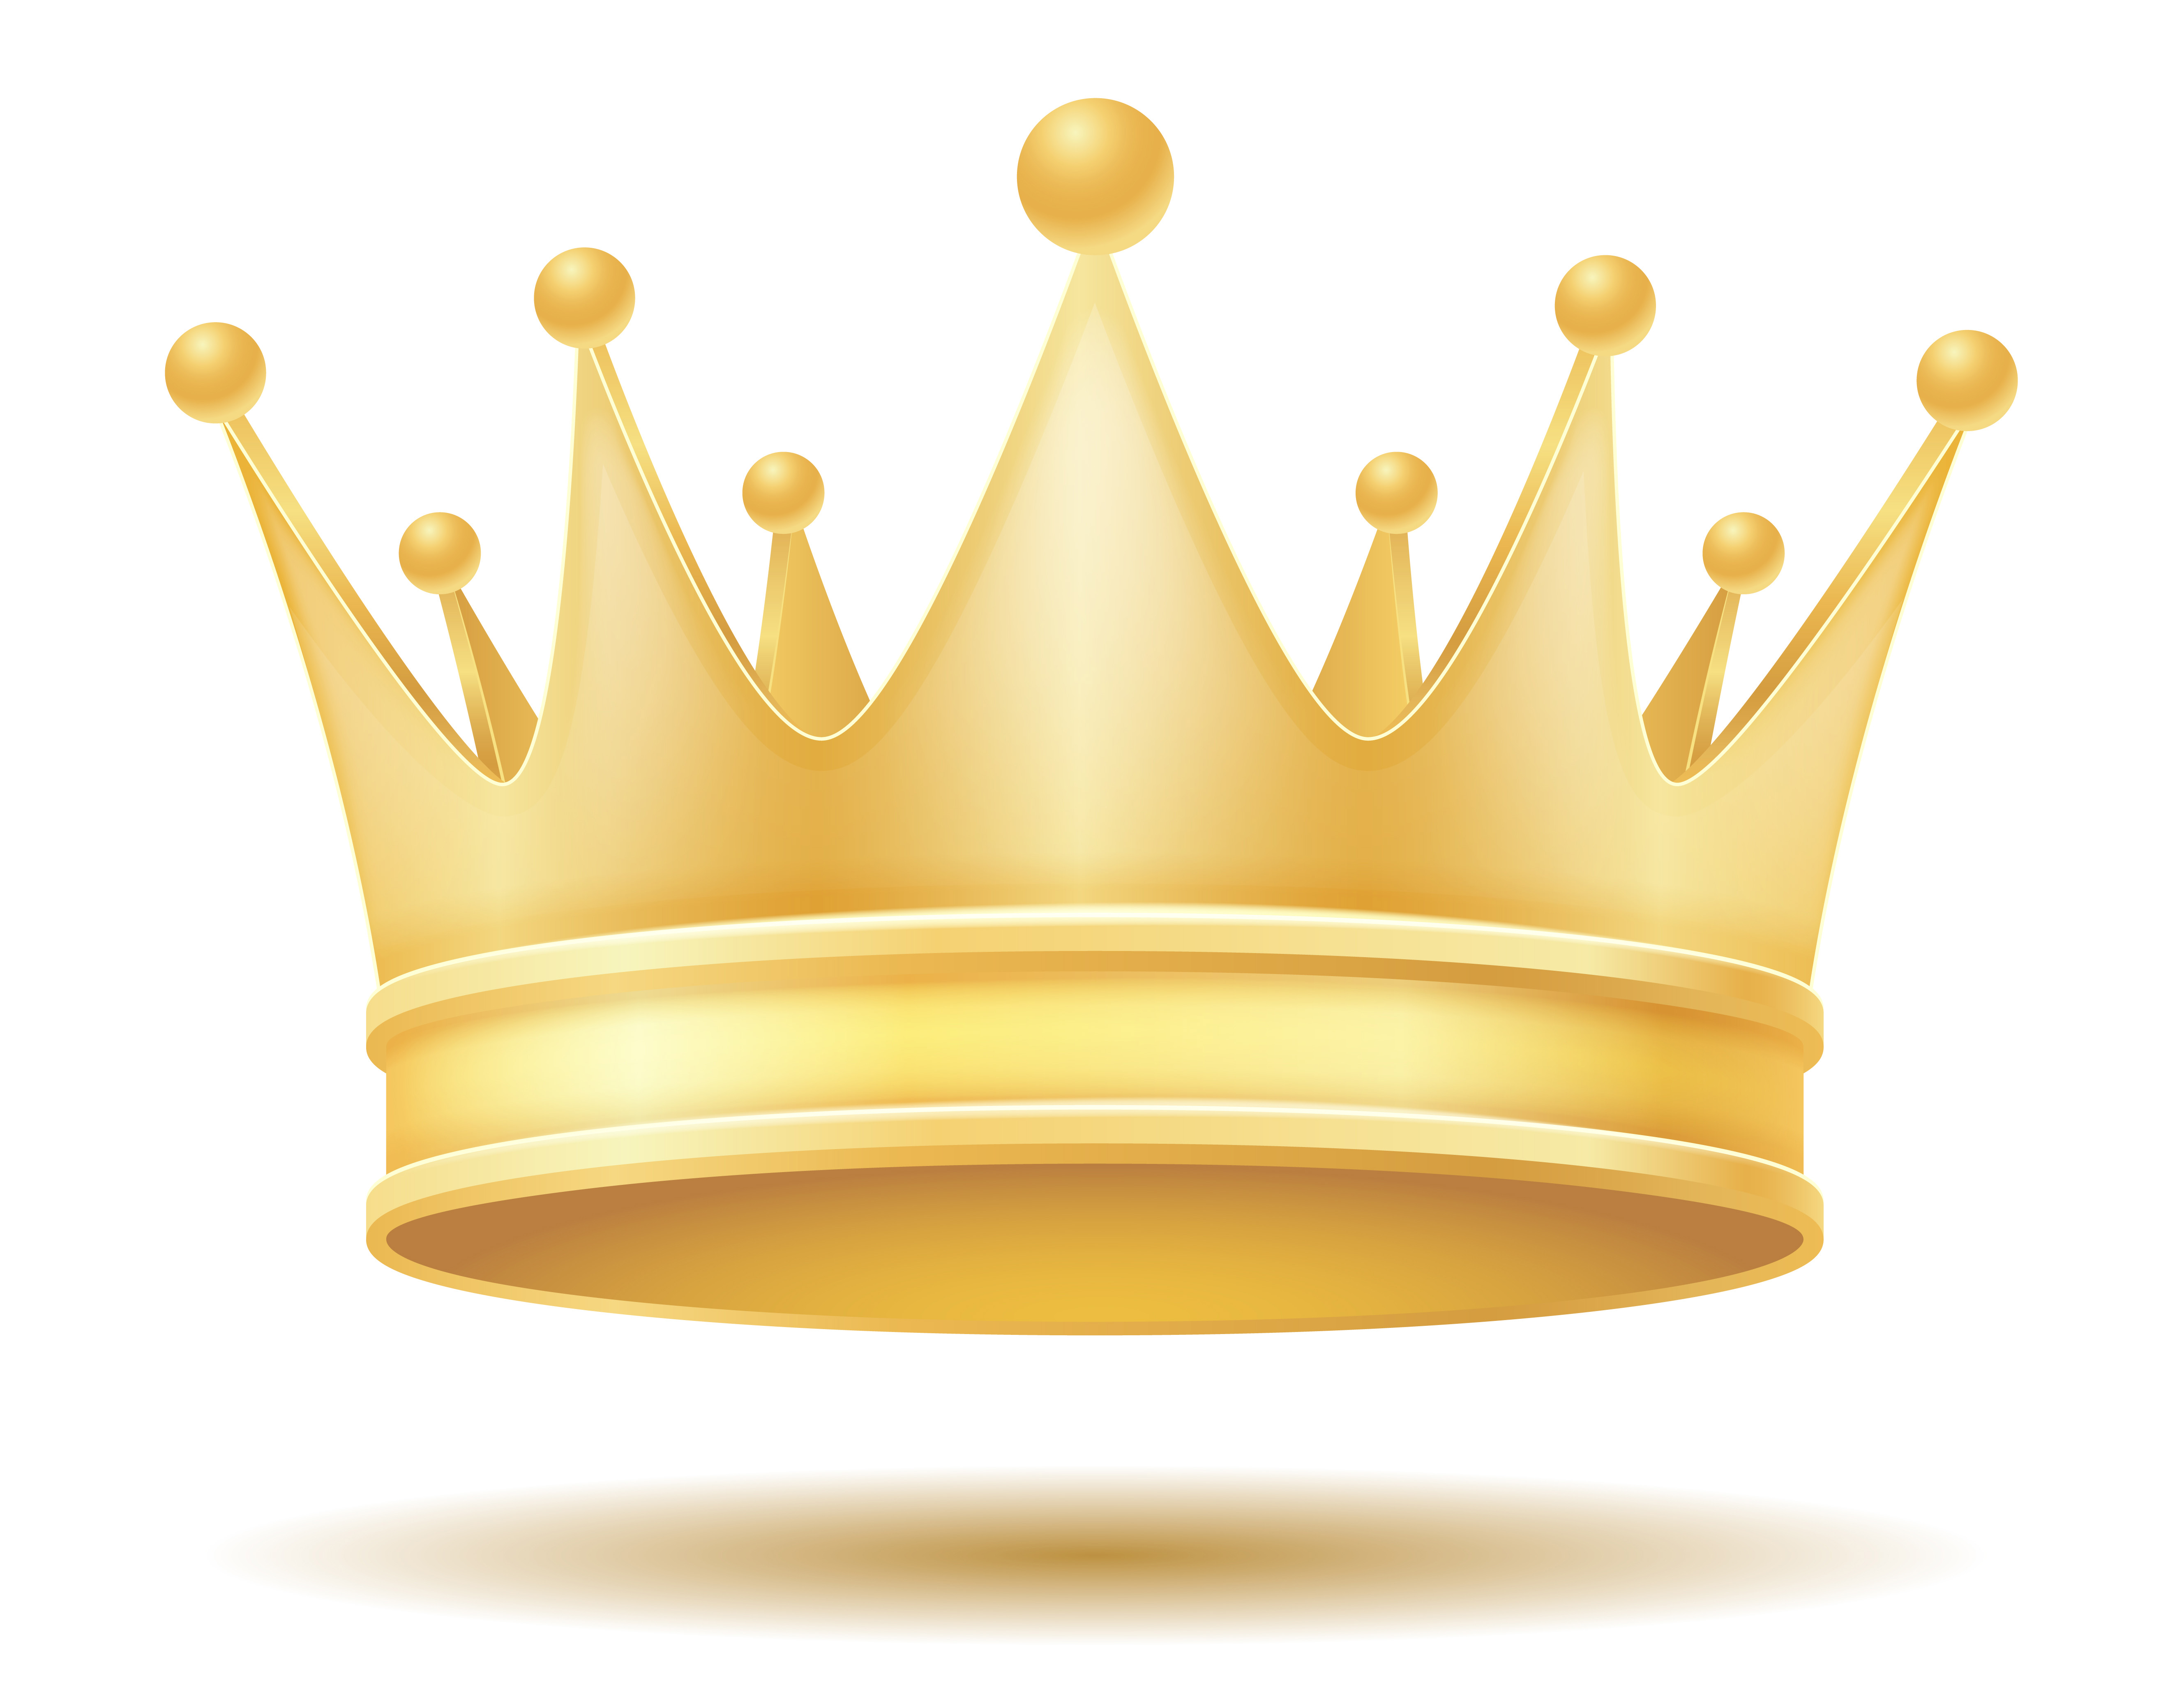 Download king royal golden crown vector illustration 488450 ...